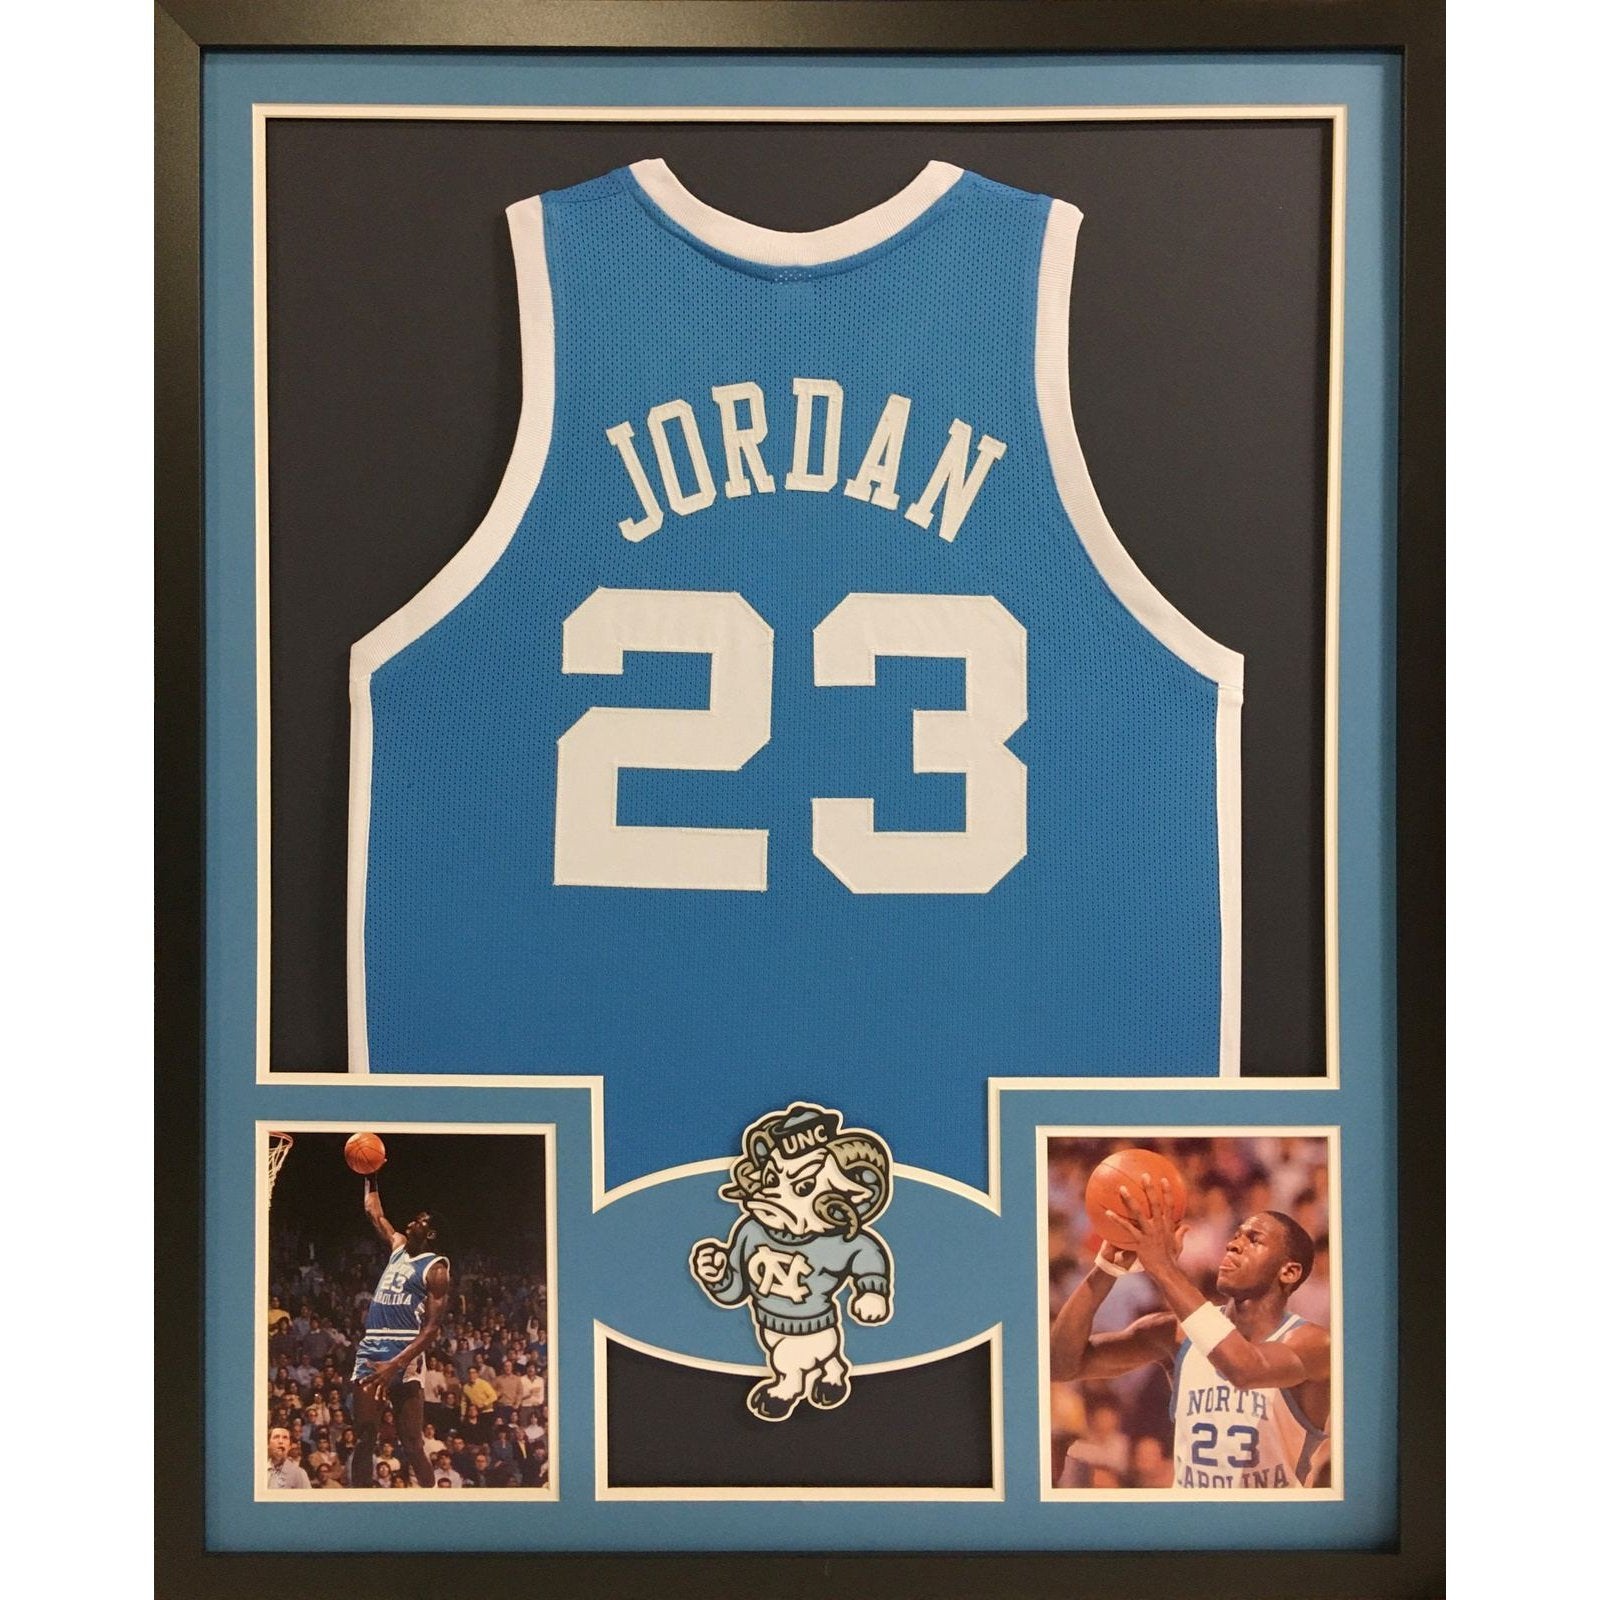 Michael Jordan Jerseys, Jordan 23 Jerseys